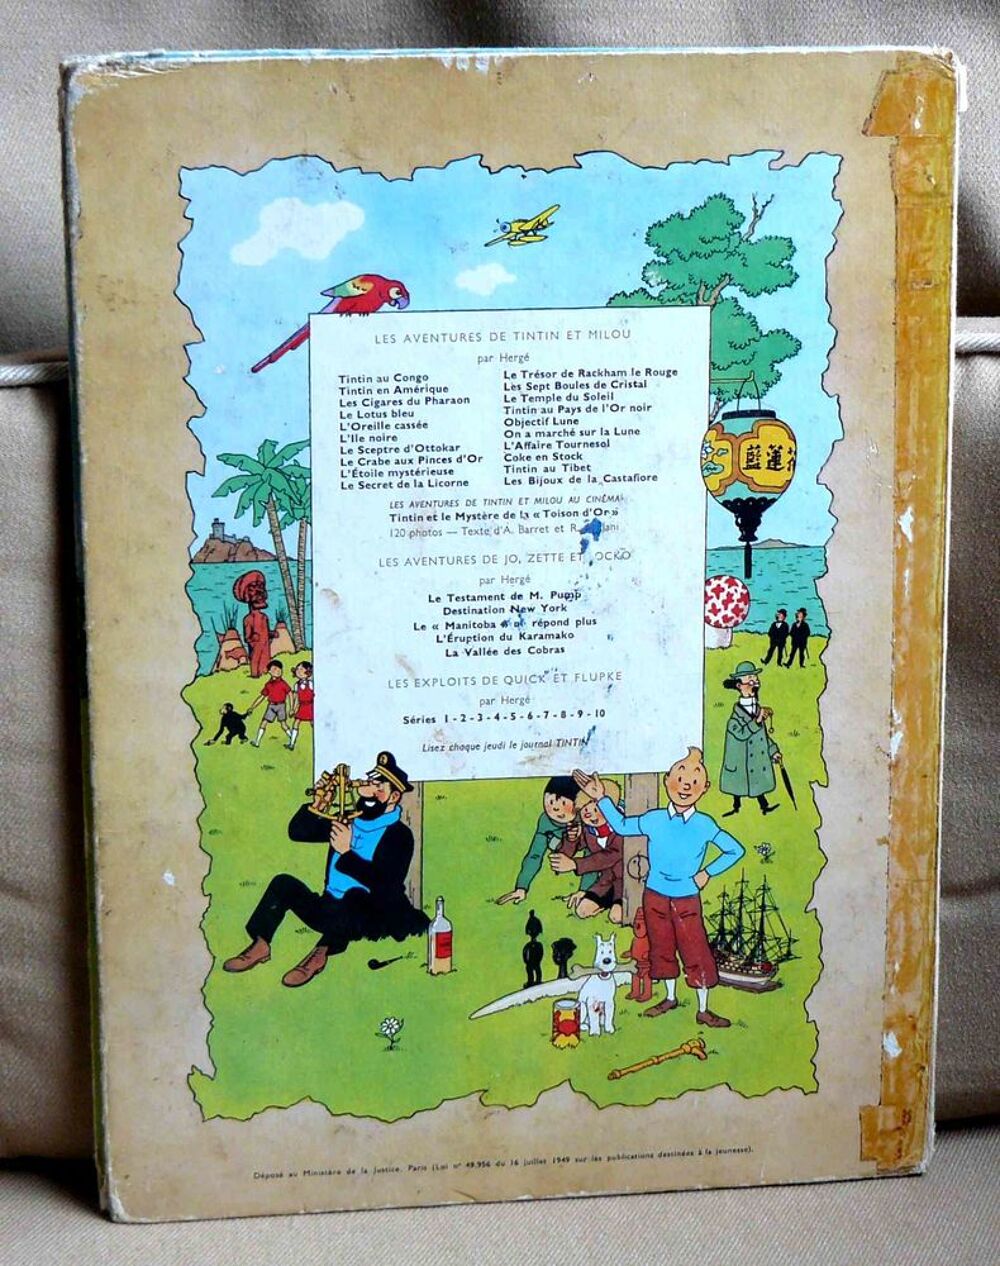 Tintin en Am&eacute;rique - B35 - 1964 - pour r&eacute;cup&eacute;ration Livres et BD